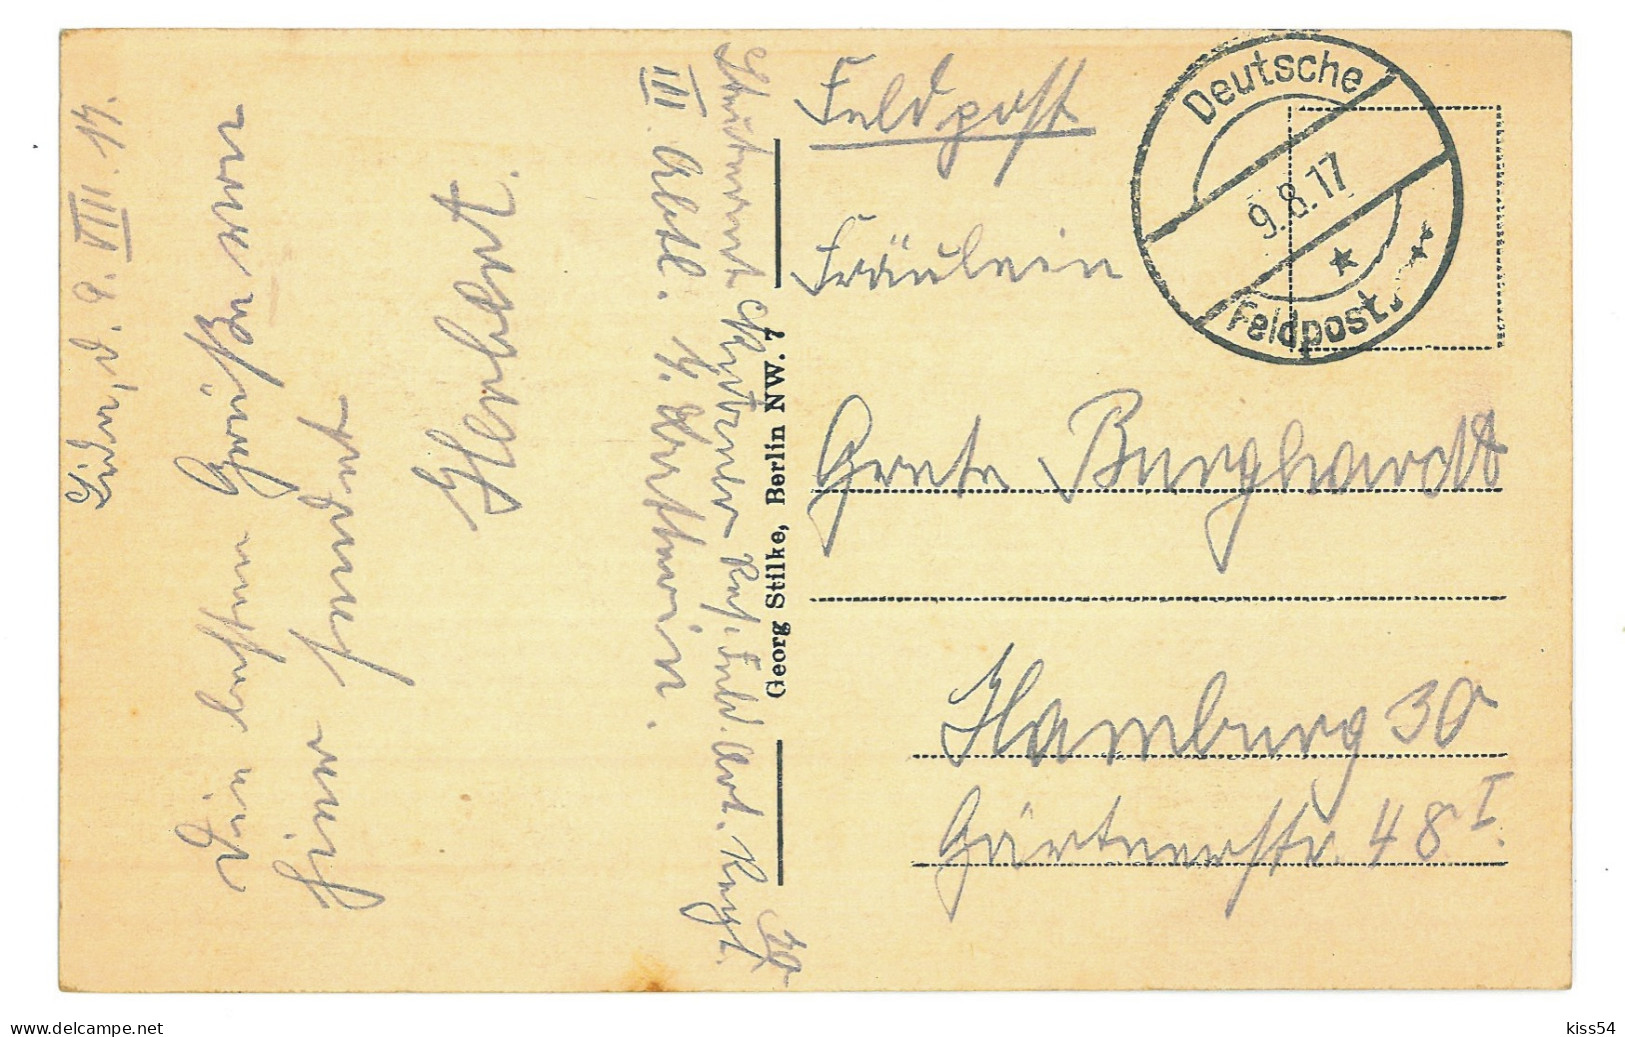 BL 27 - 24549 LIDA, Beyond The River, Belarus - Old Postcard, CENSOR - Used - 1917 - Weißrussland